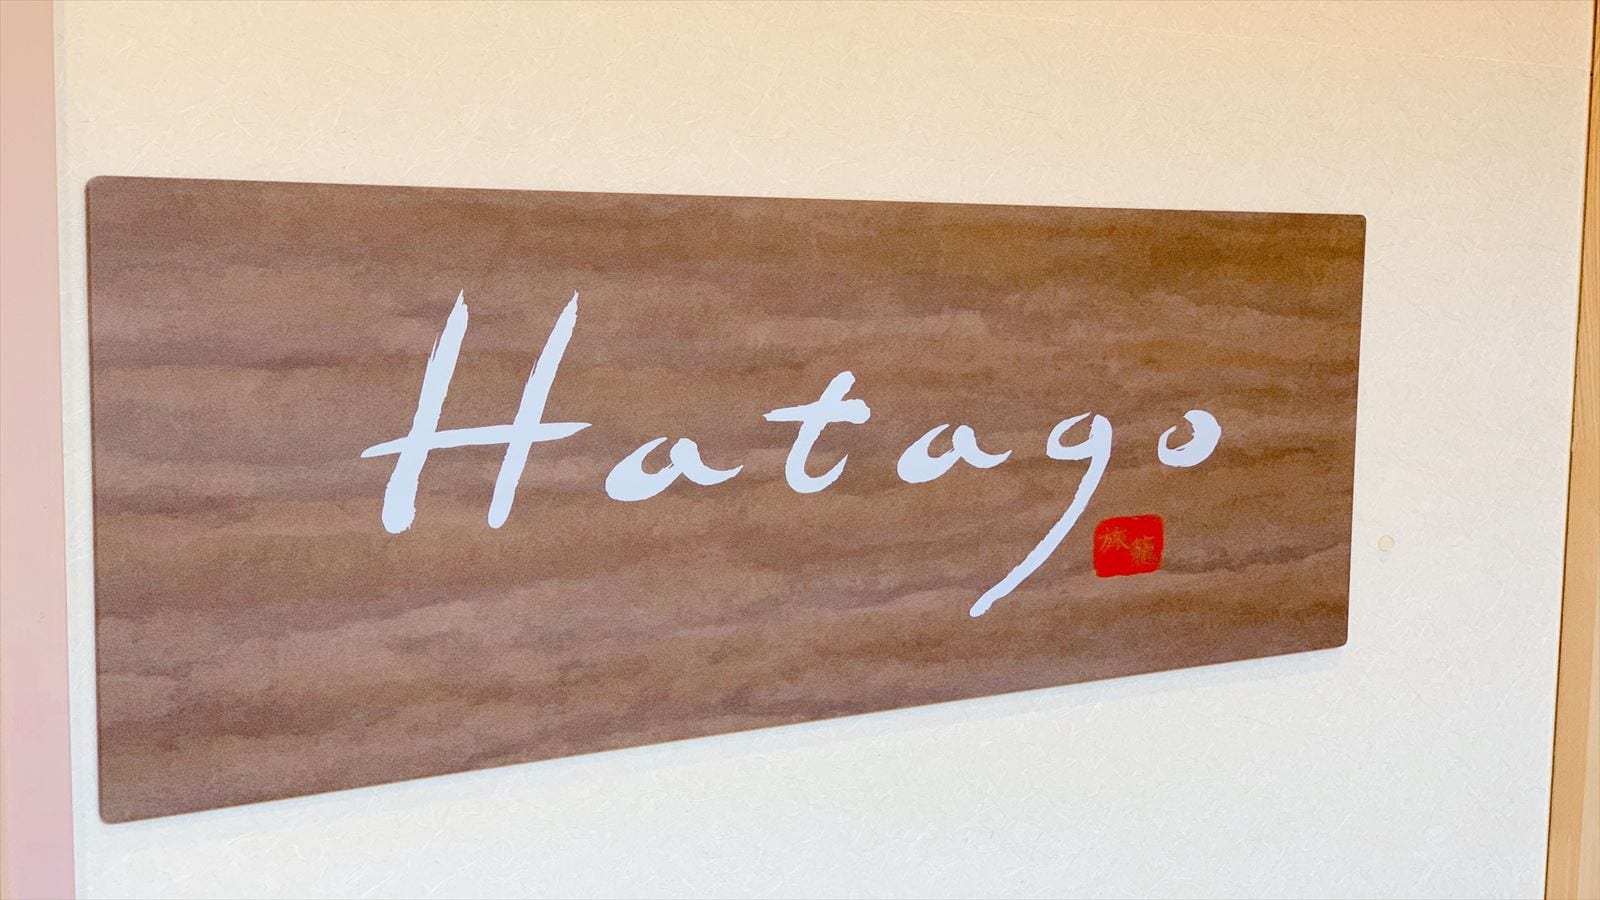 ◆ Restaurant venue "Hatago" 6: 30-9: 30 (last entry 9:00) 84 seats